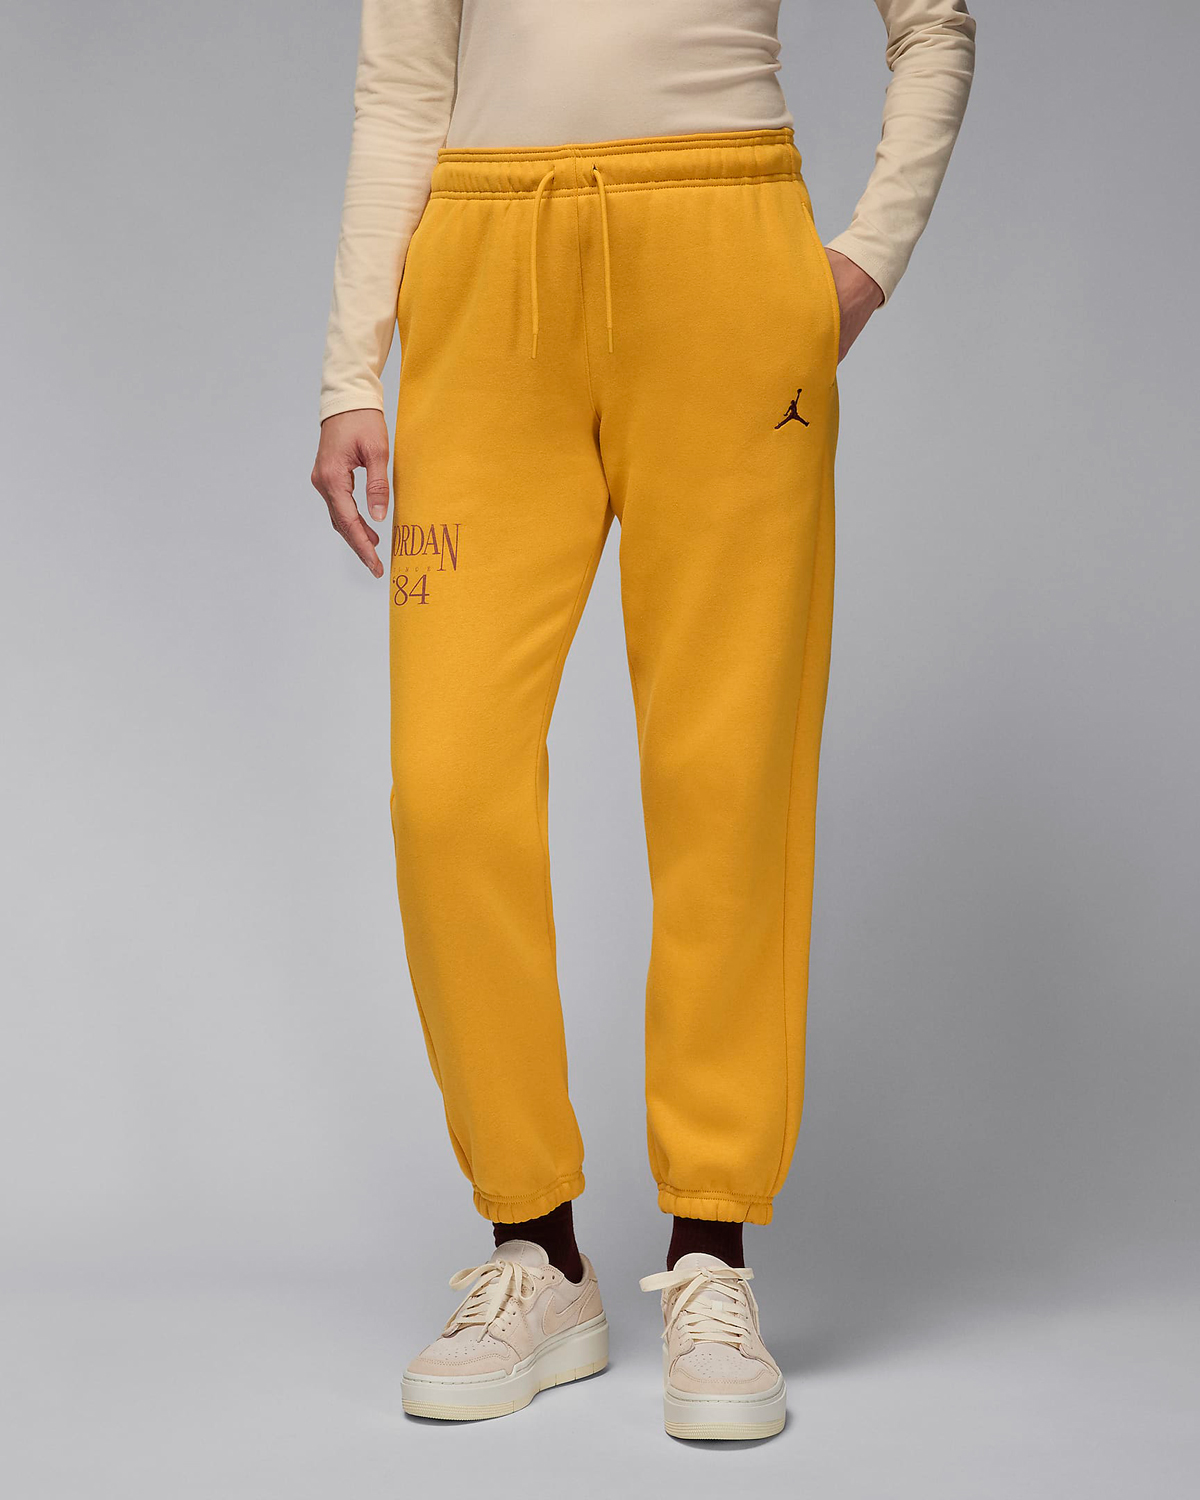 Jordan-Brooklyn-Womens-Fleece-Pants-Yellow-Ochre-Dusty-Peach-1